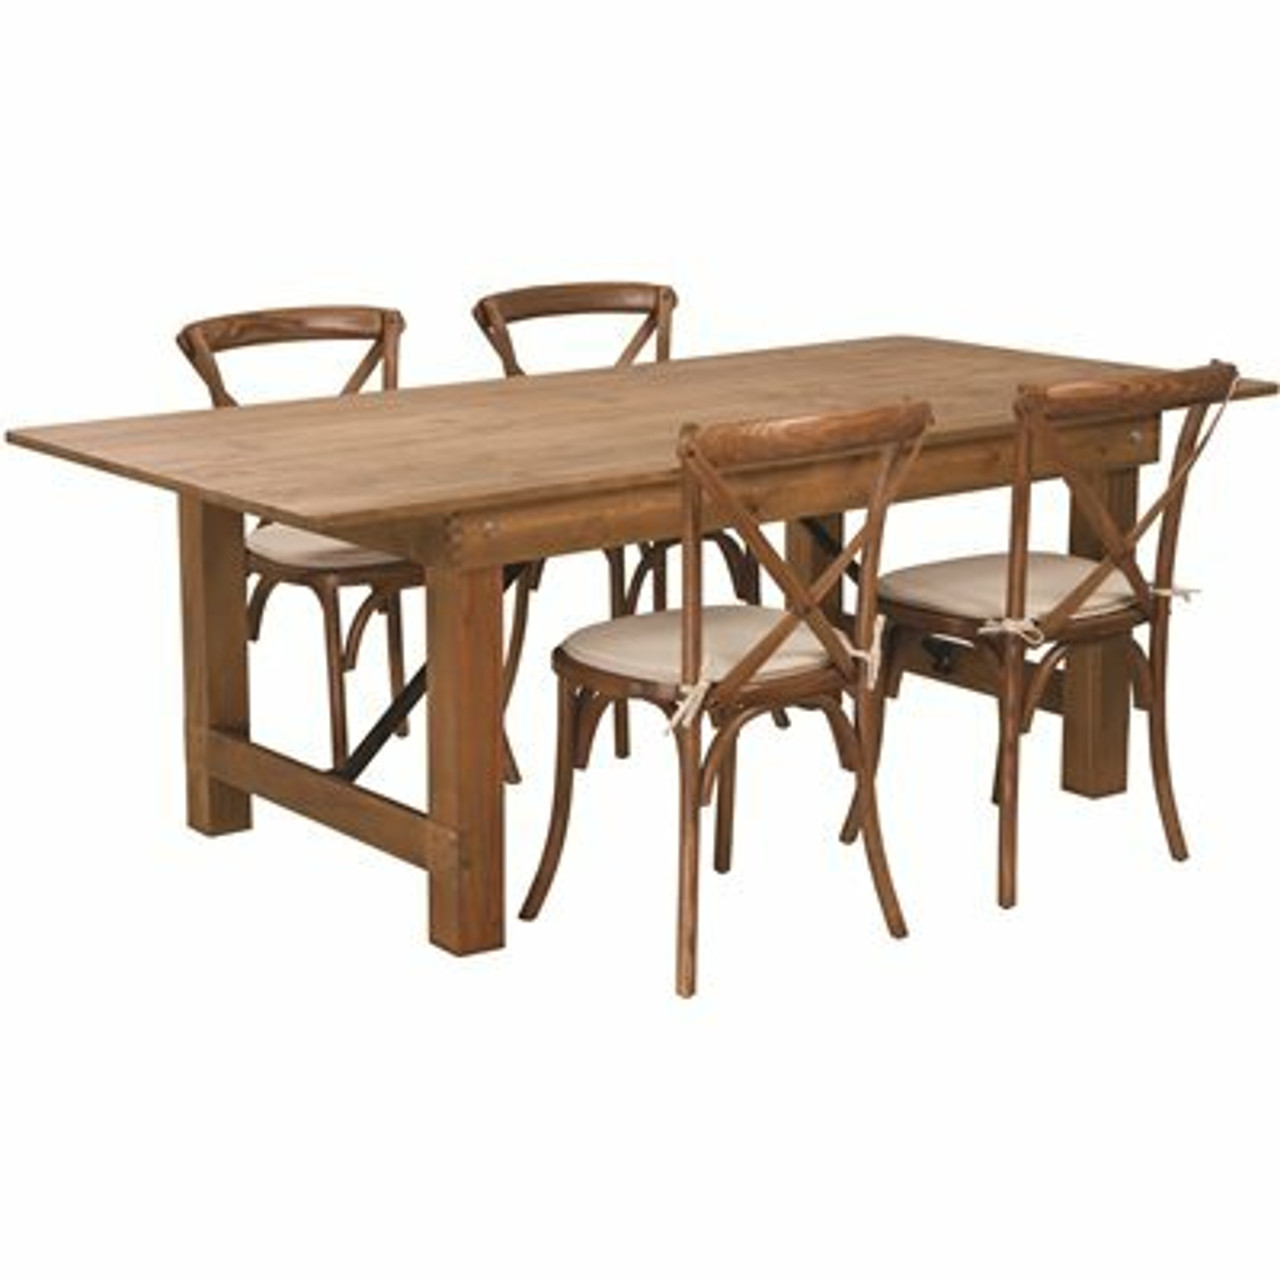 Carnegy Avenue 5-Piece Antique Rustic Farm Table Set - 311524275